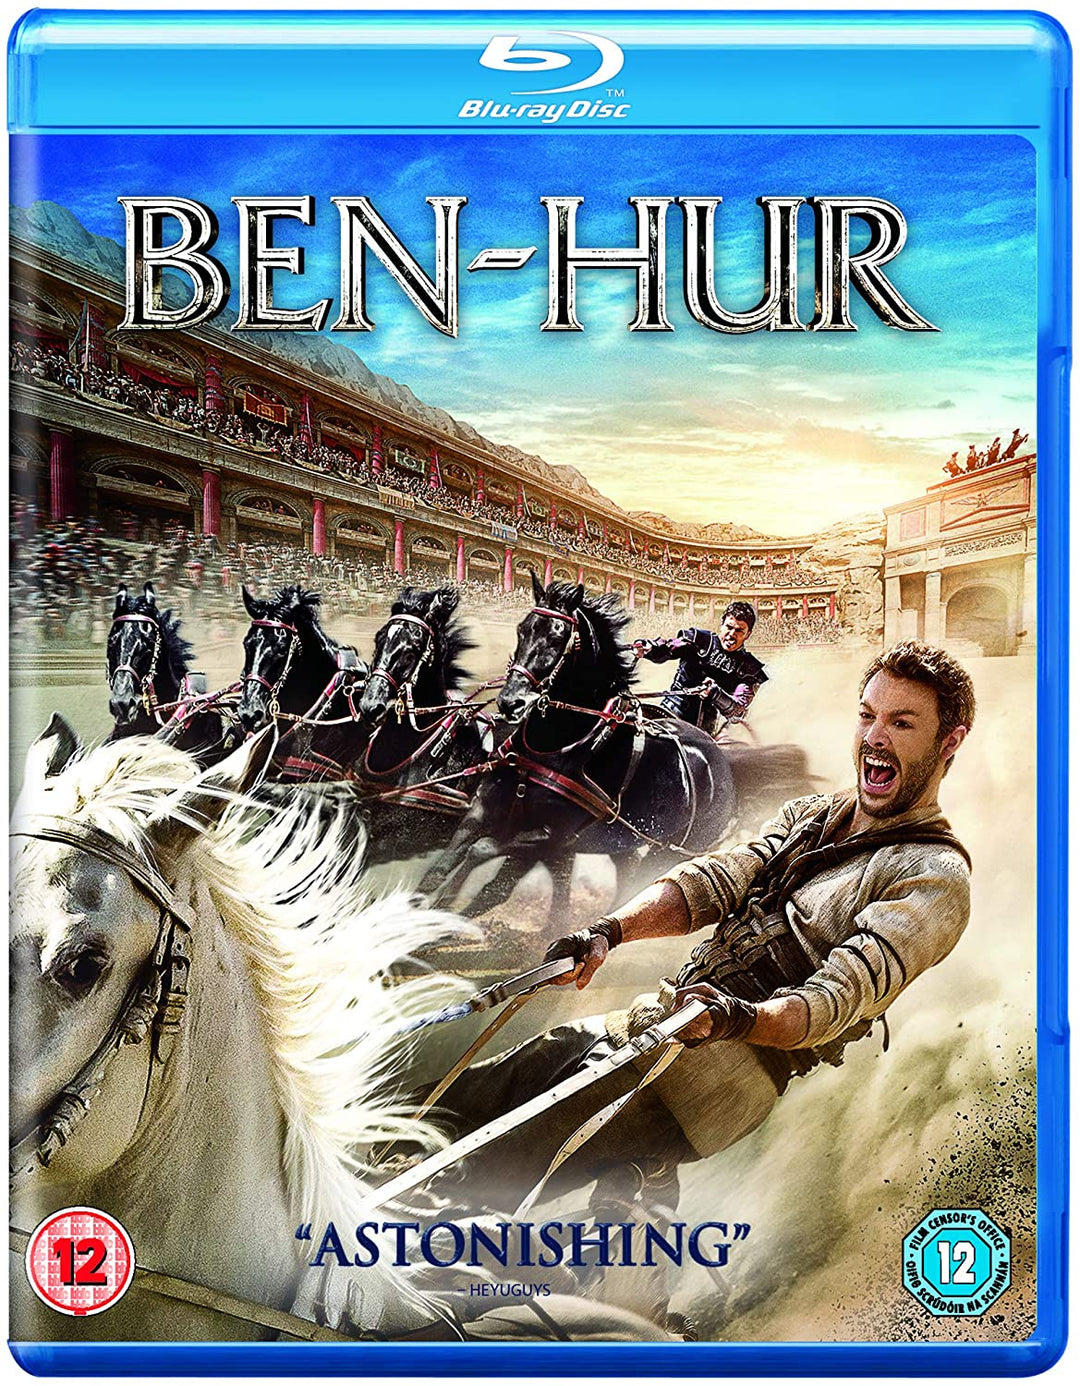 Ben Hur [Blu-ray] [2017] [Région Gratuit]